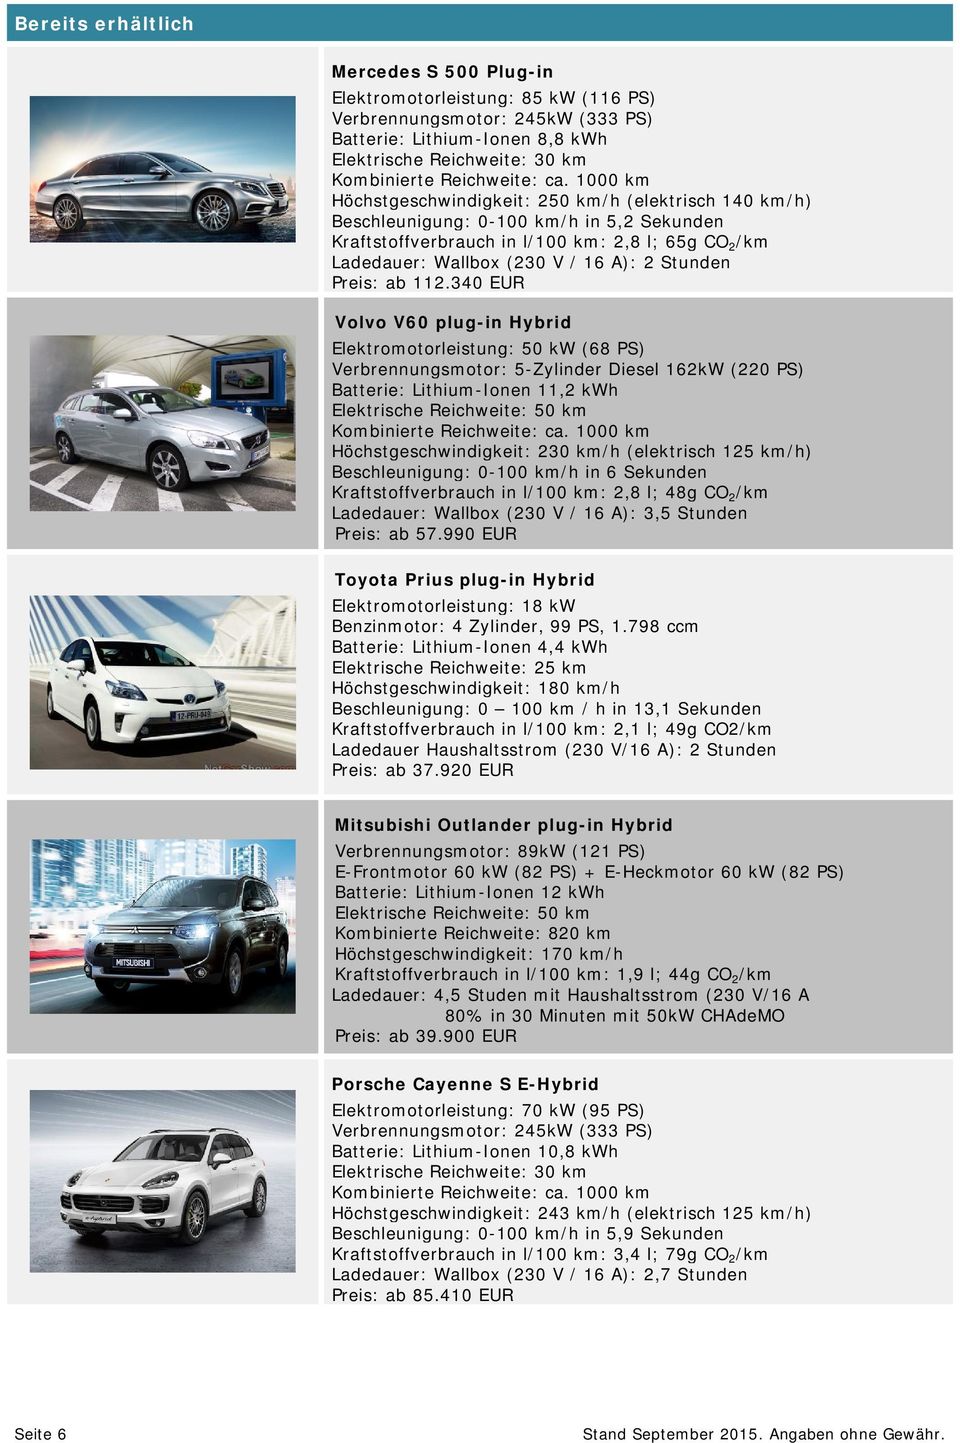 340 EUR Volvo V60 plug-in Hybrid Elektromotorleistung: 50 kw (68 PS) Verbrennungsmotor: 5-Zylinder Diesel 162kW (220 PS) Batterie: Lithium-Ionen 11,2 kwh Höchstgeschwindigkeit: 230 km/h (elektrisch